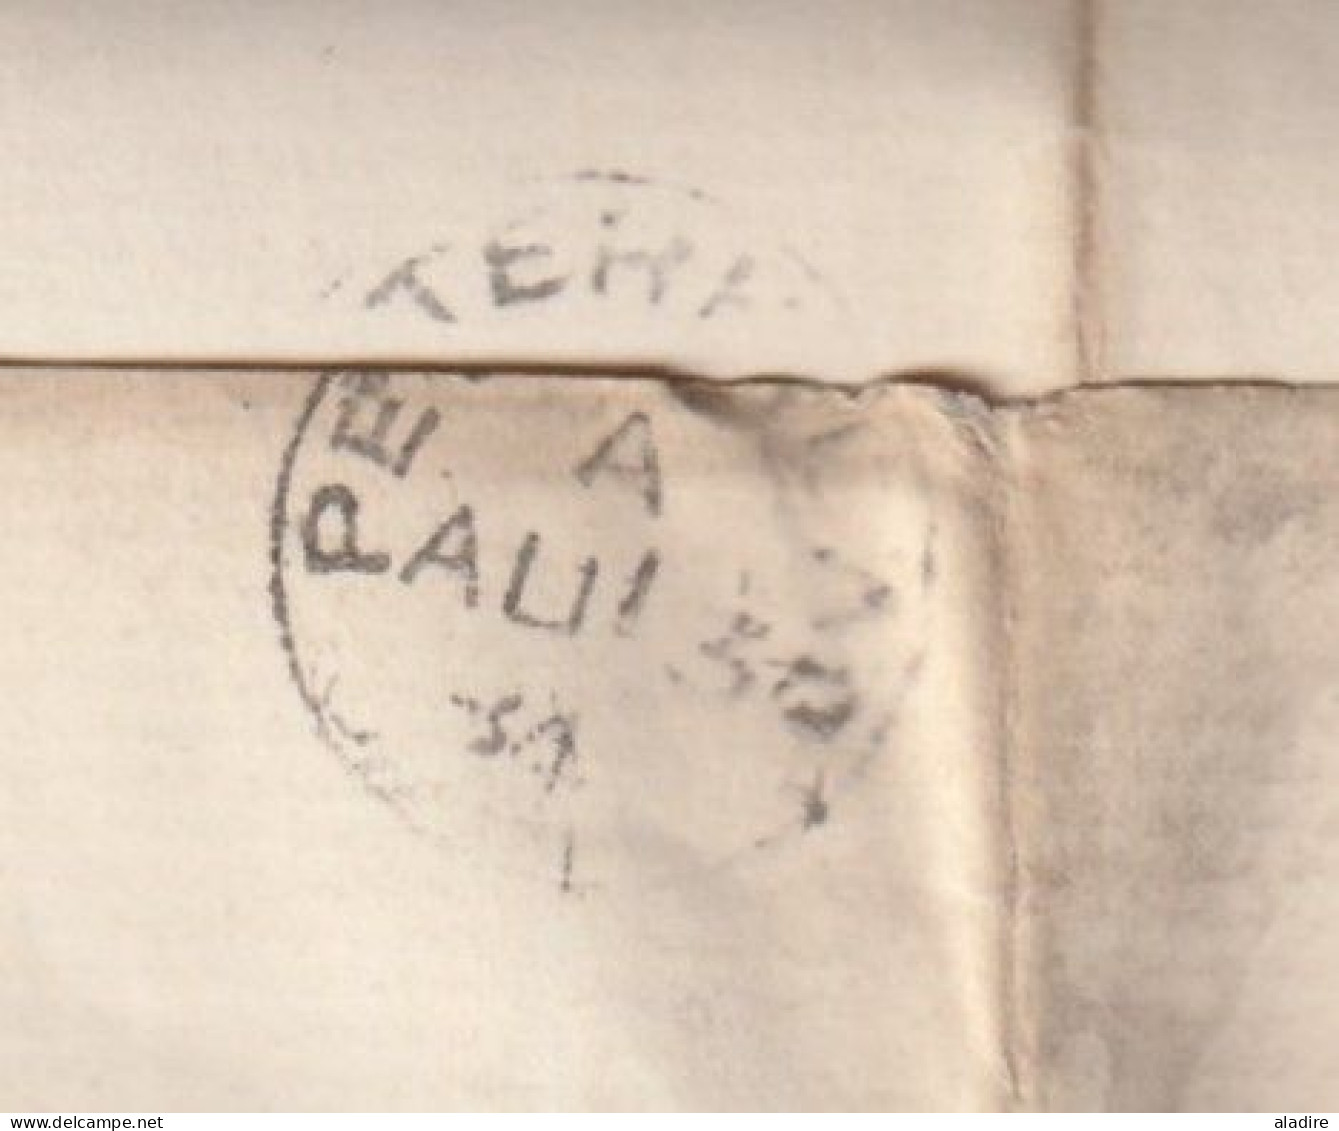 QV - 1884 - Imprimé Et Feuillet De Réponse De ABERDEEN, Ecosse Vers PETERHEAD (to The Inspector Of Poor) - 1/2 Penny - Lettres & Documents